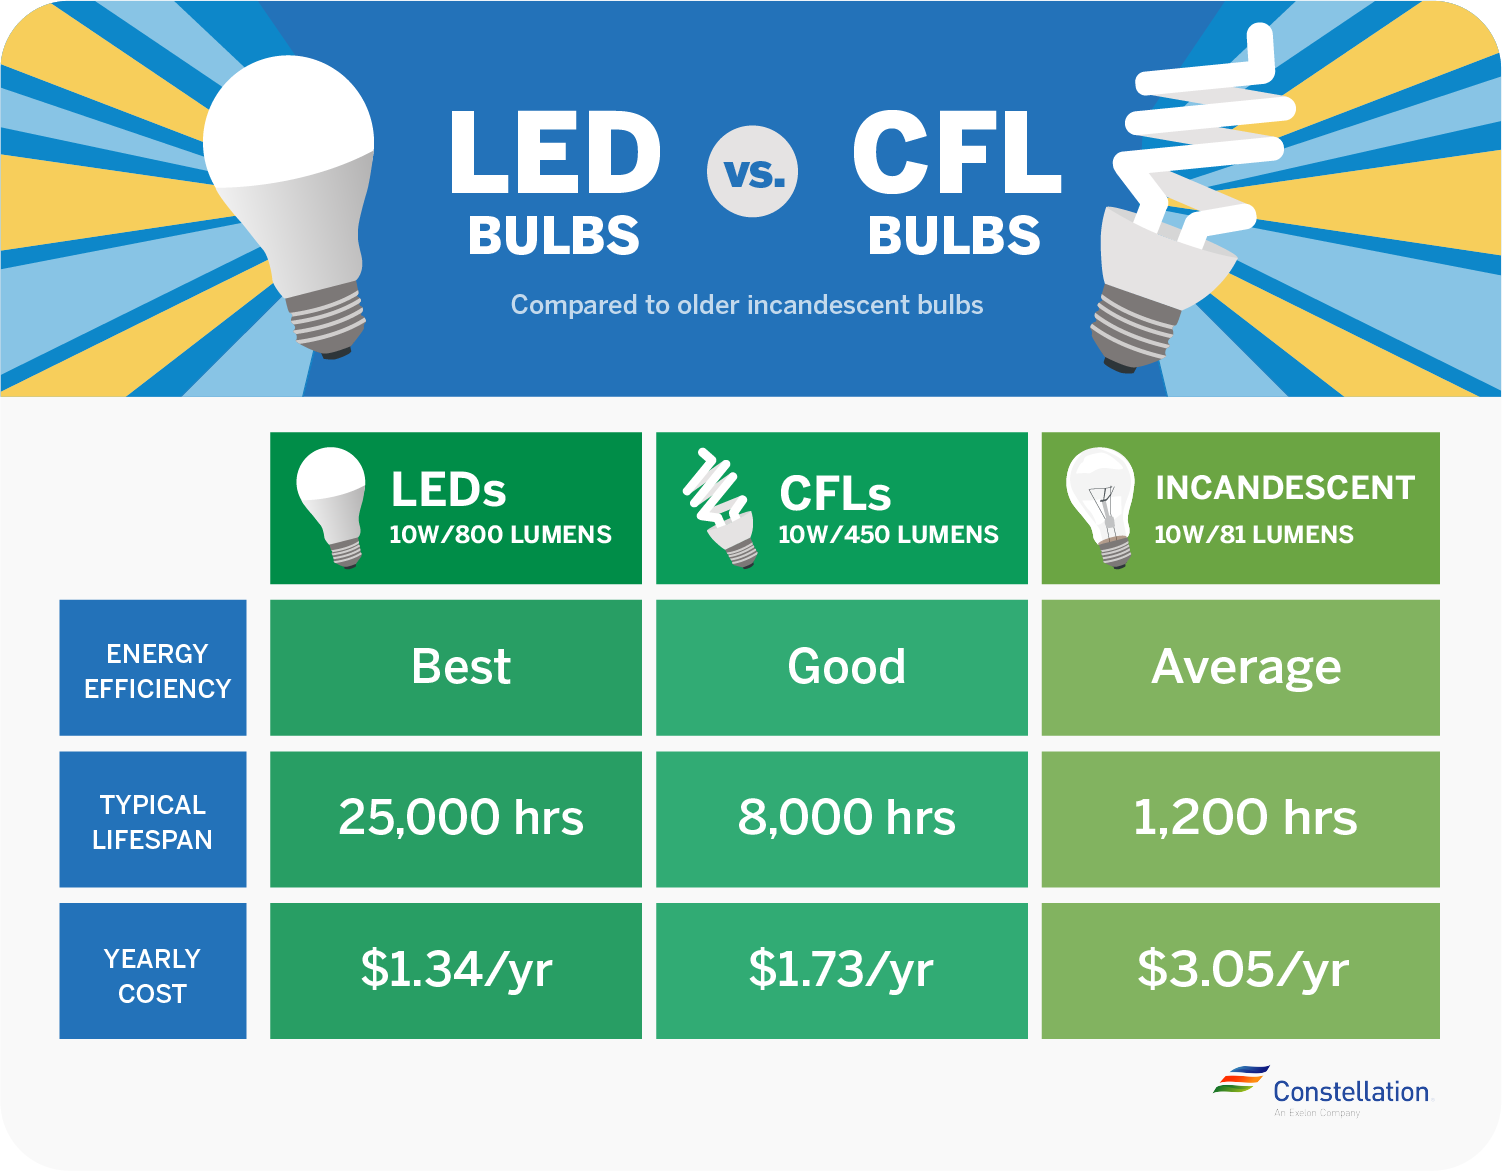 CFL vs. LED bulbs